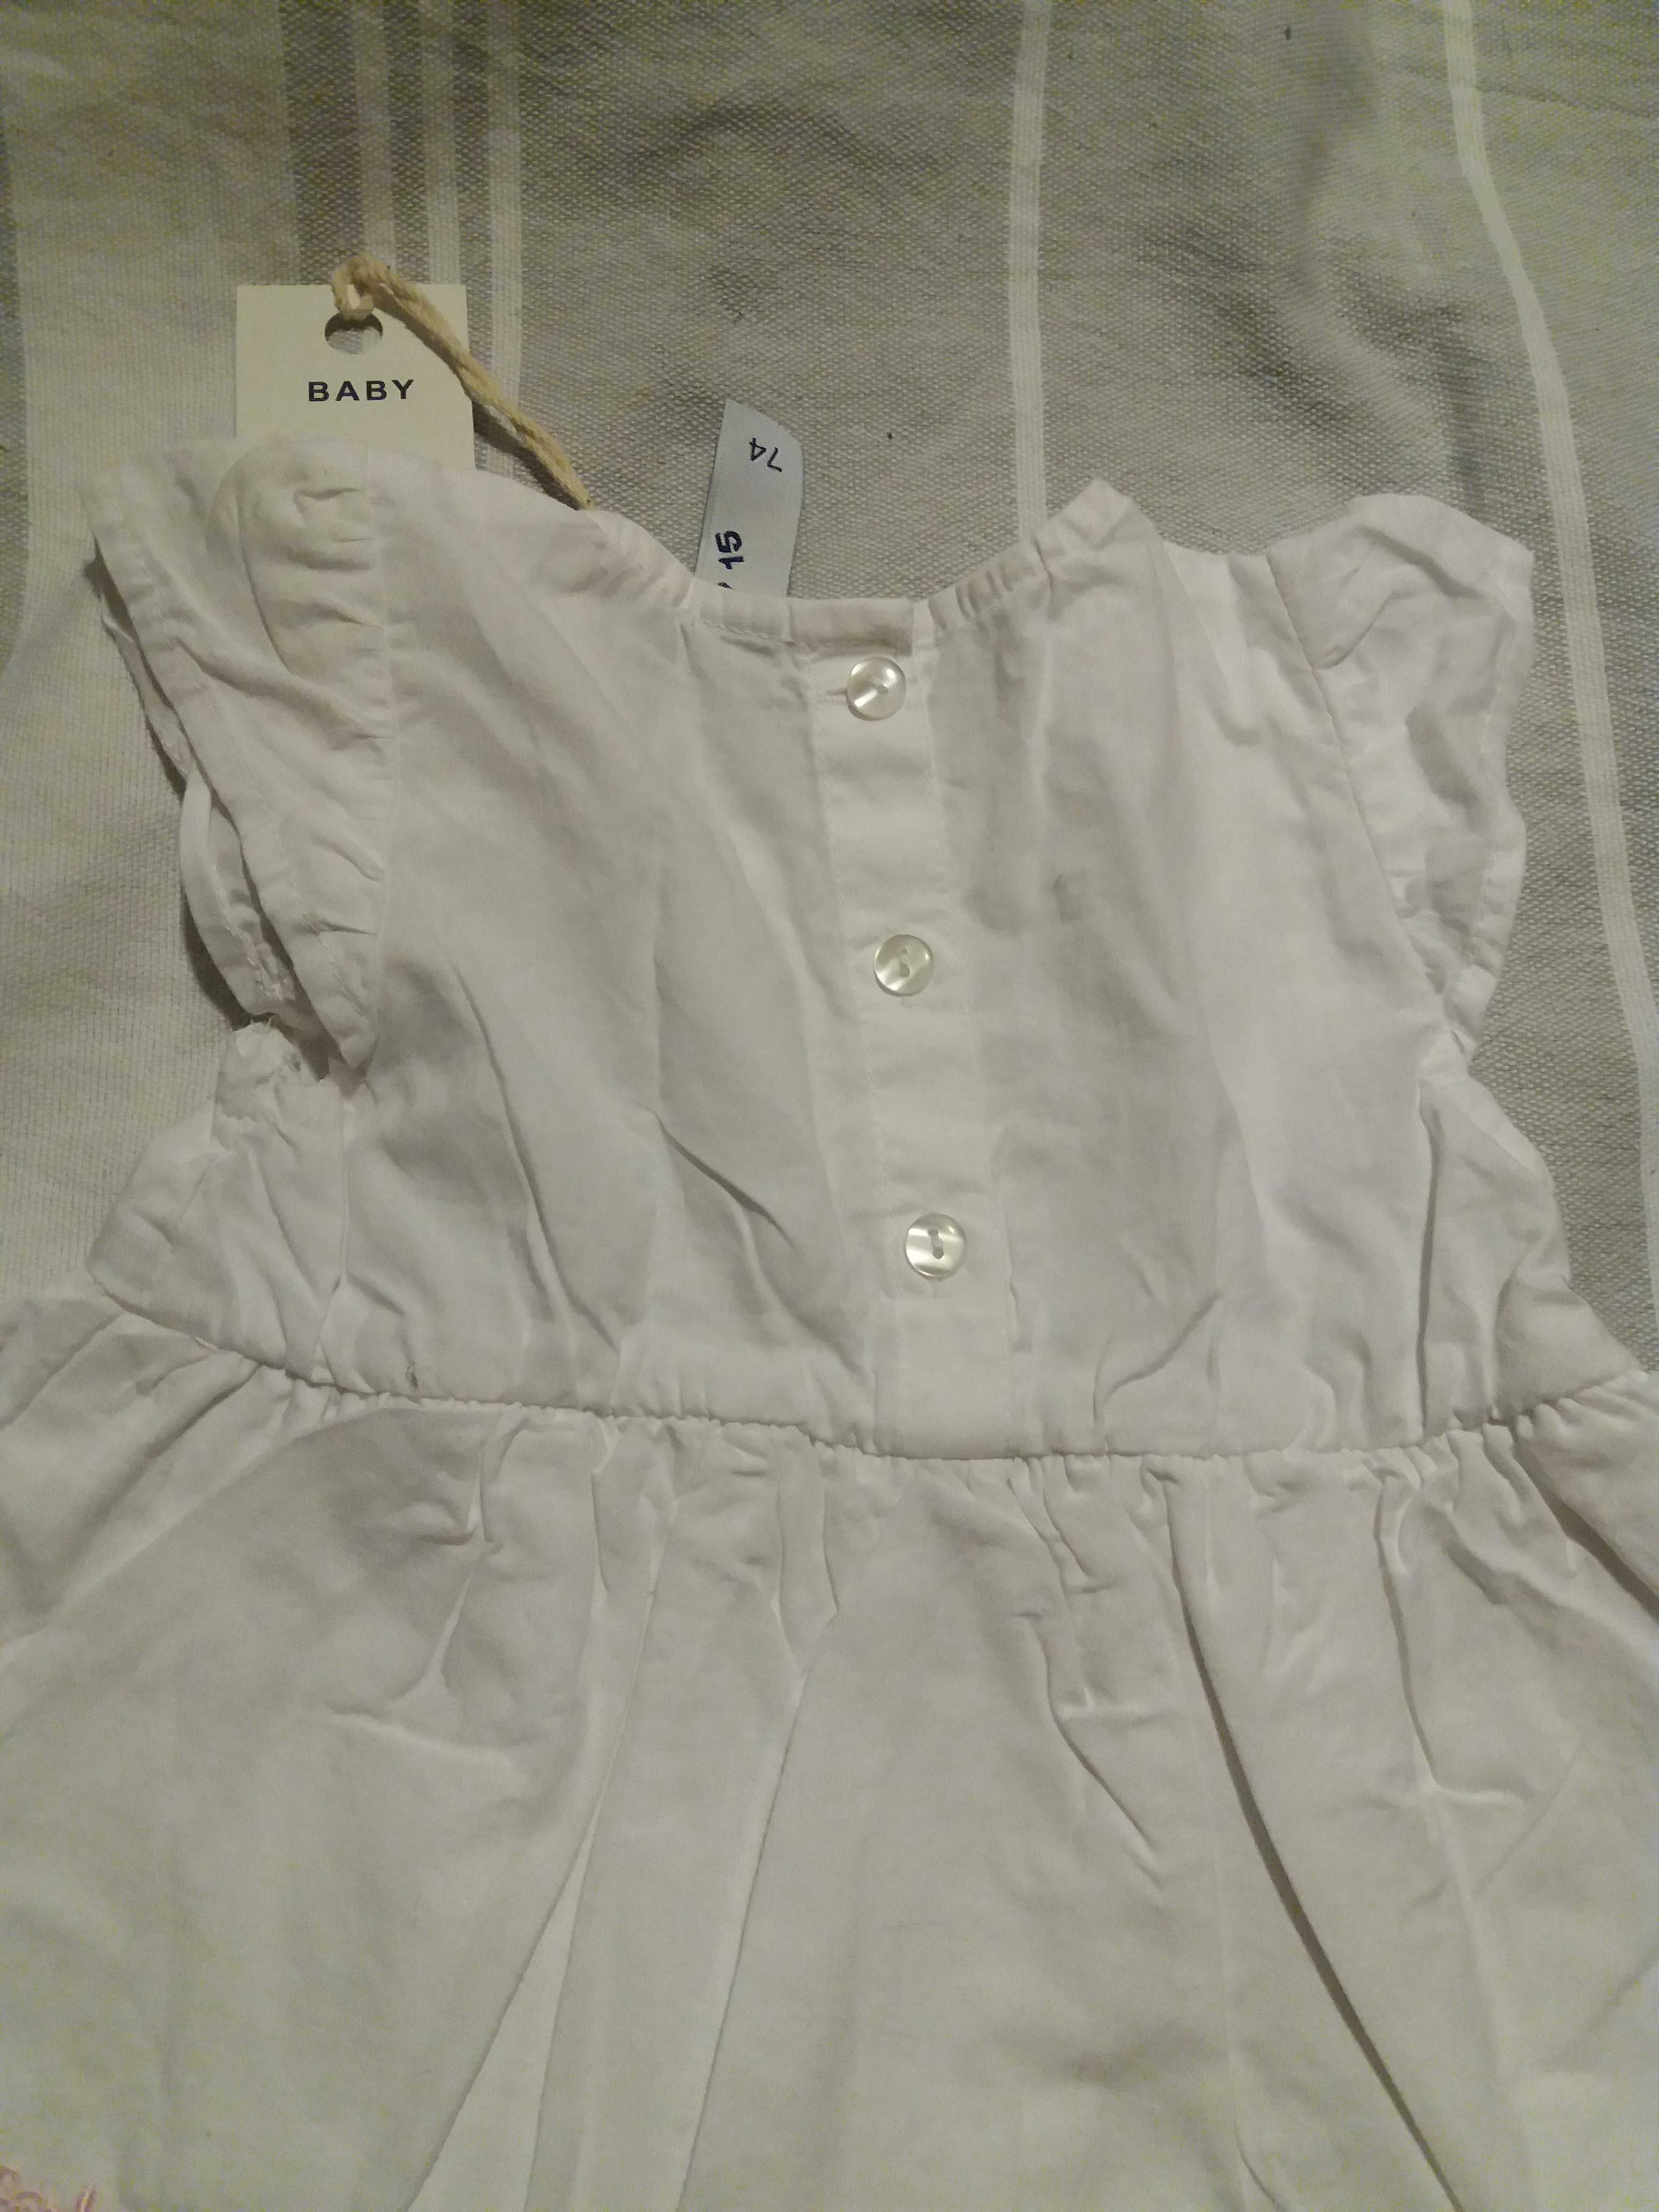 NOWA 5 10 15 biała sukienka z różowym haftem prezent chrzest 74